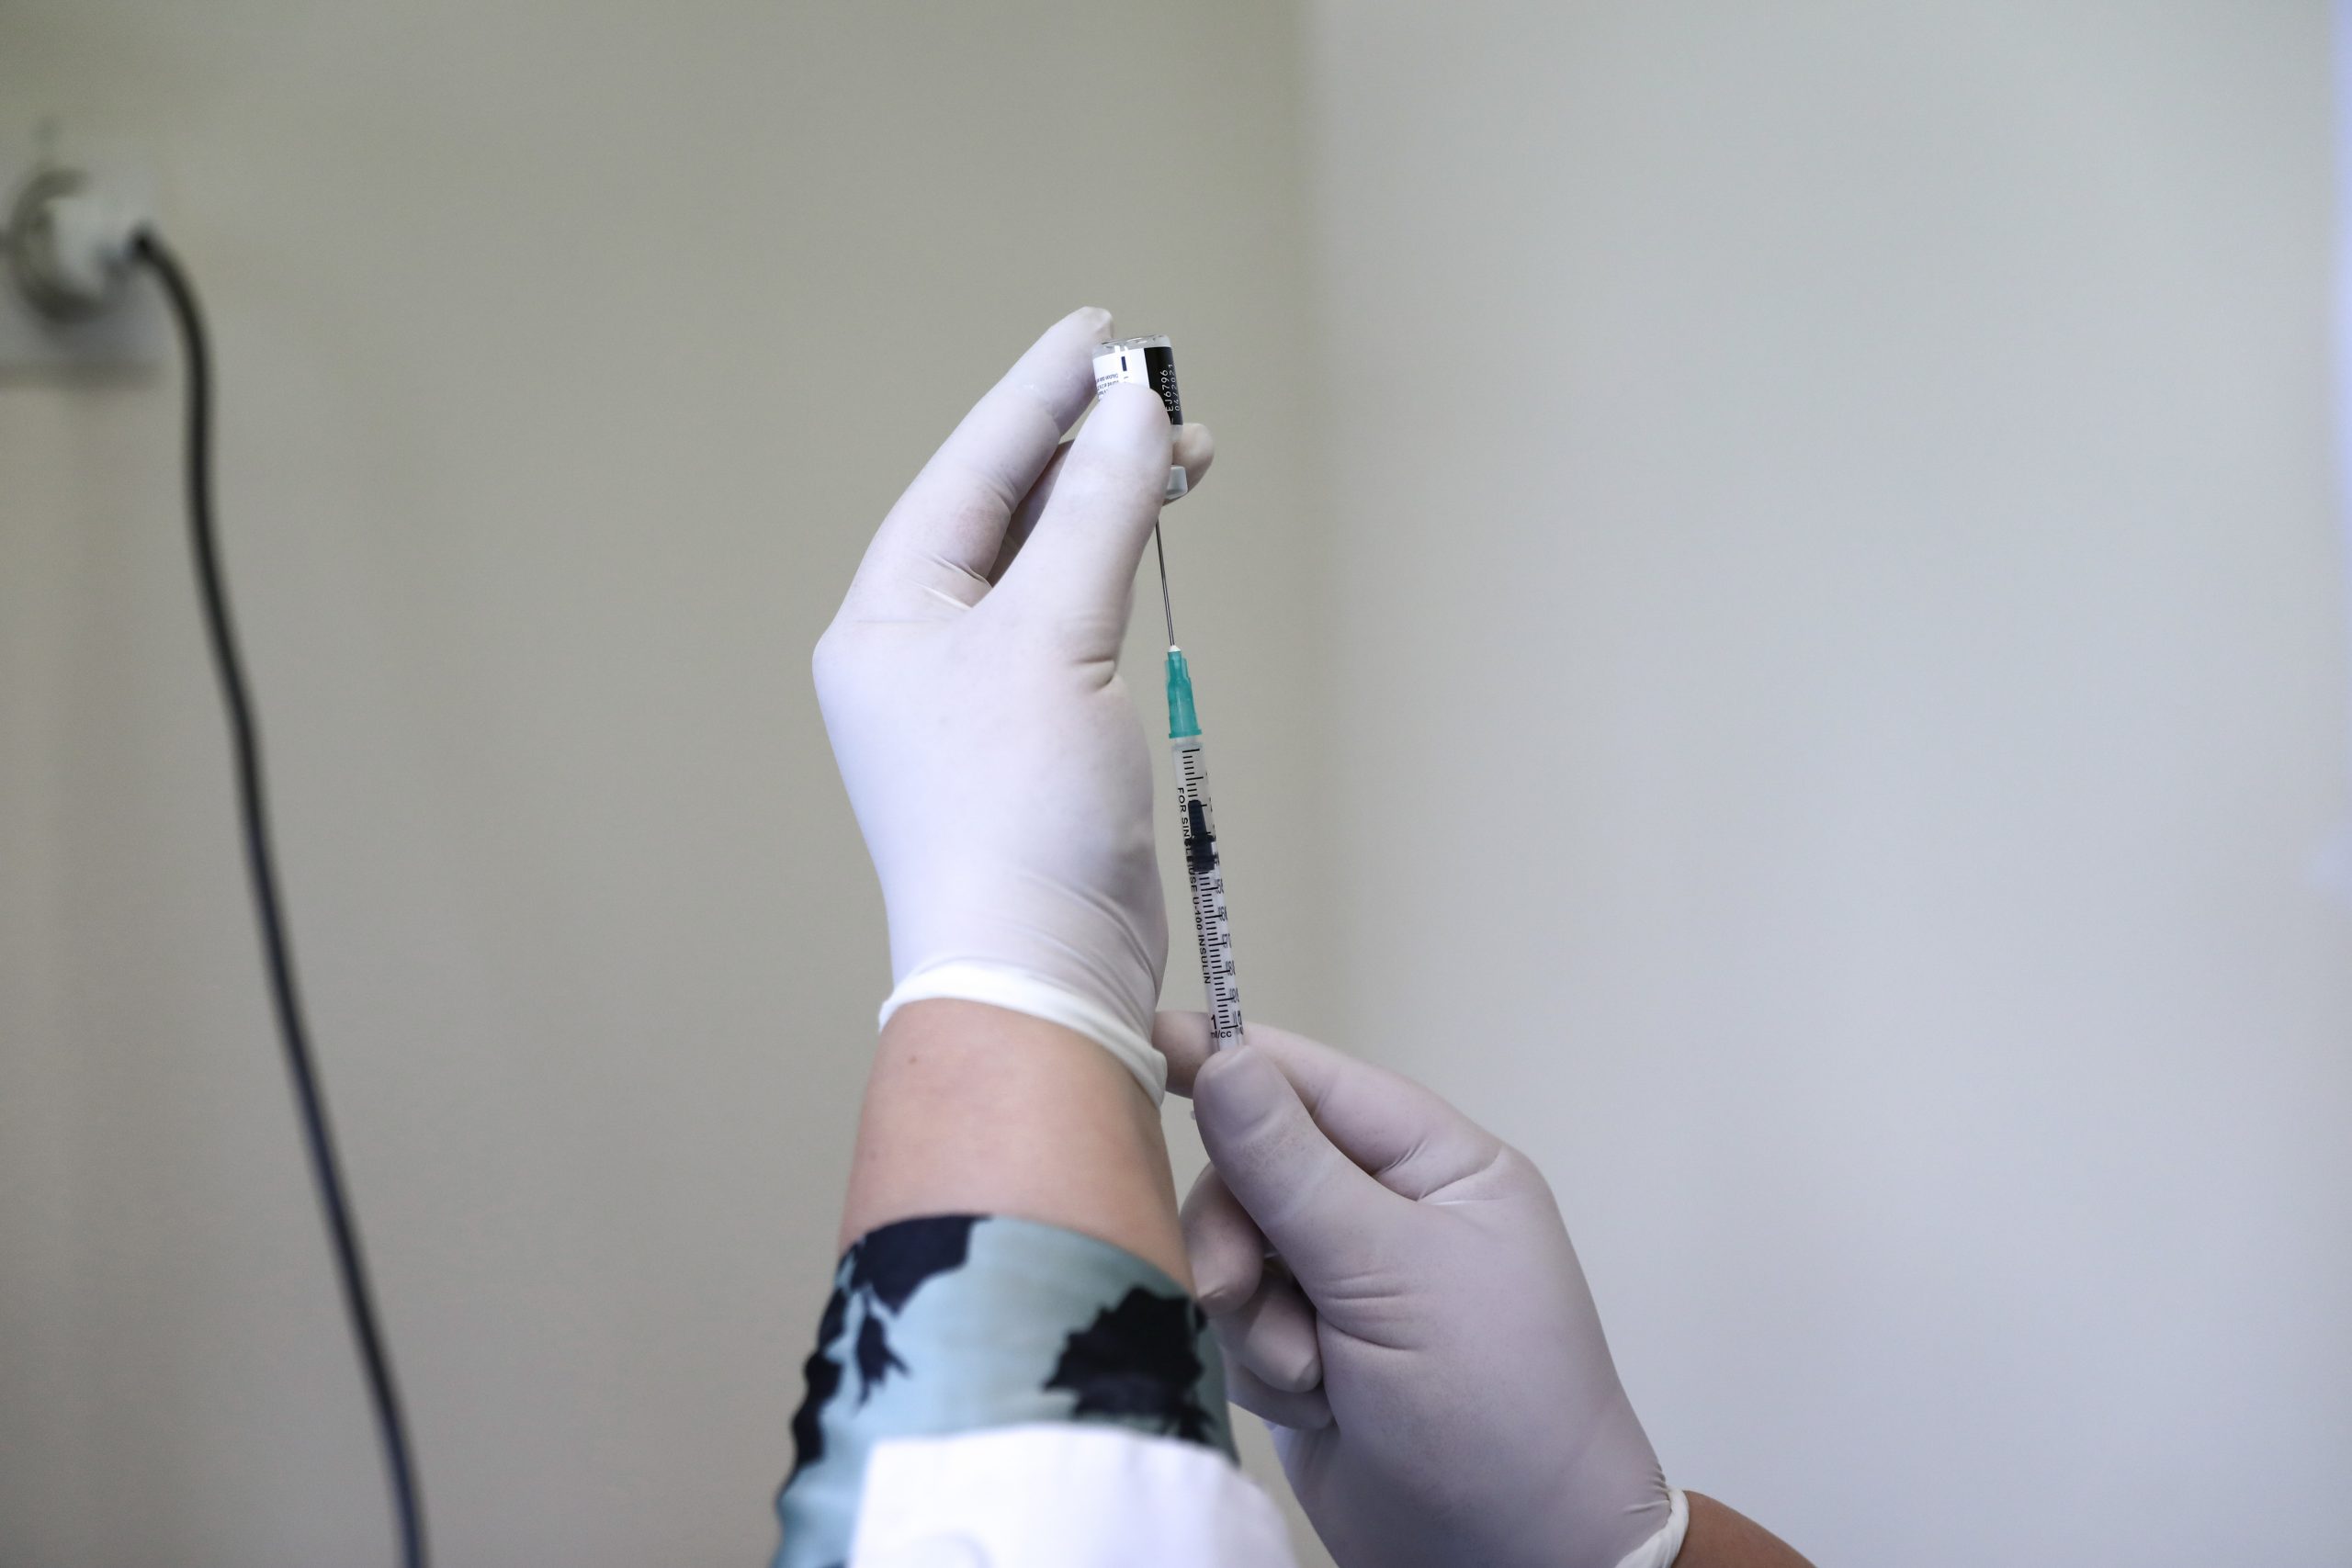 Κορονοϊός: 26χρονος πέθανε από μυοκαρδίτιδα μετά τον εμβολιασμό του με Pfizer στην Νέα Ζηλανδία